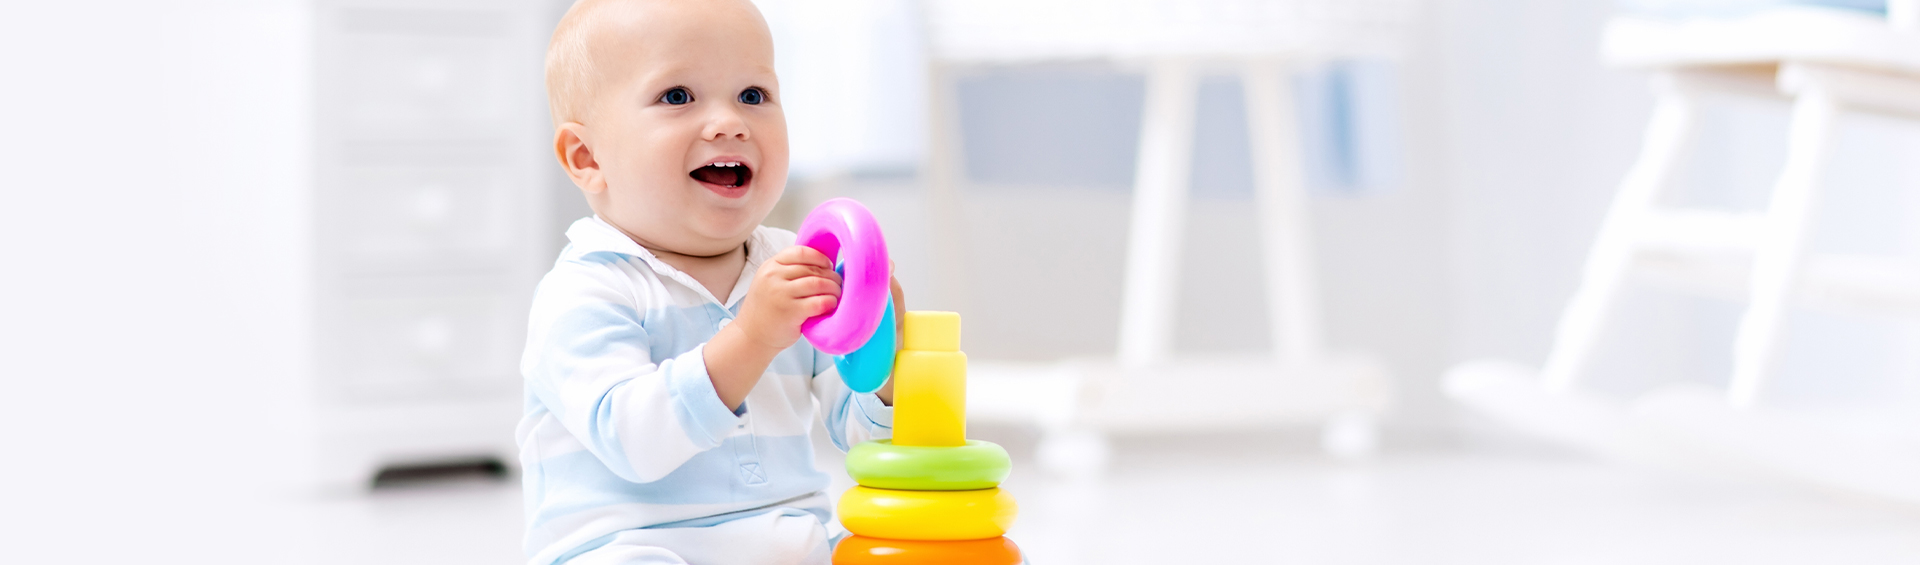 Zašto je važno izabrati pravu igračku za dete?